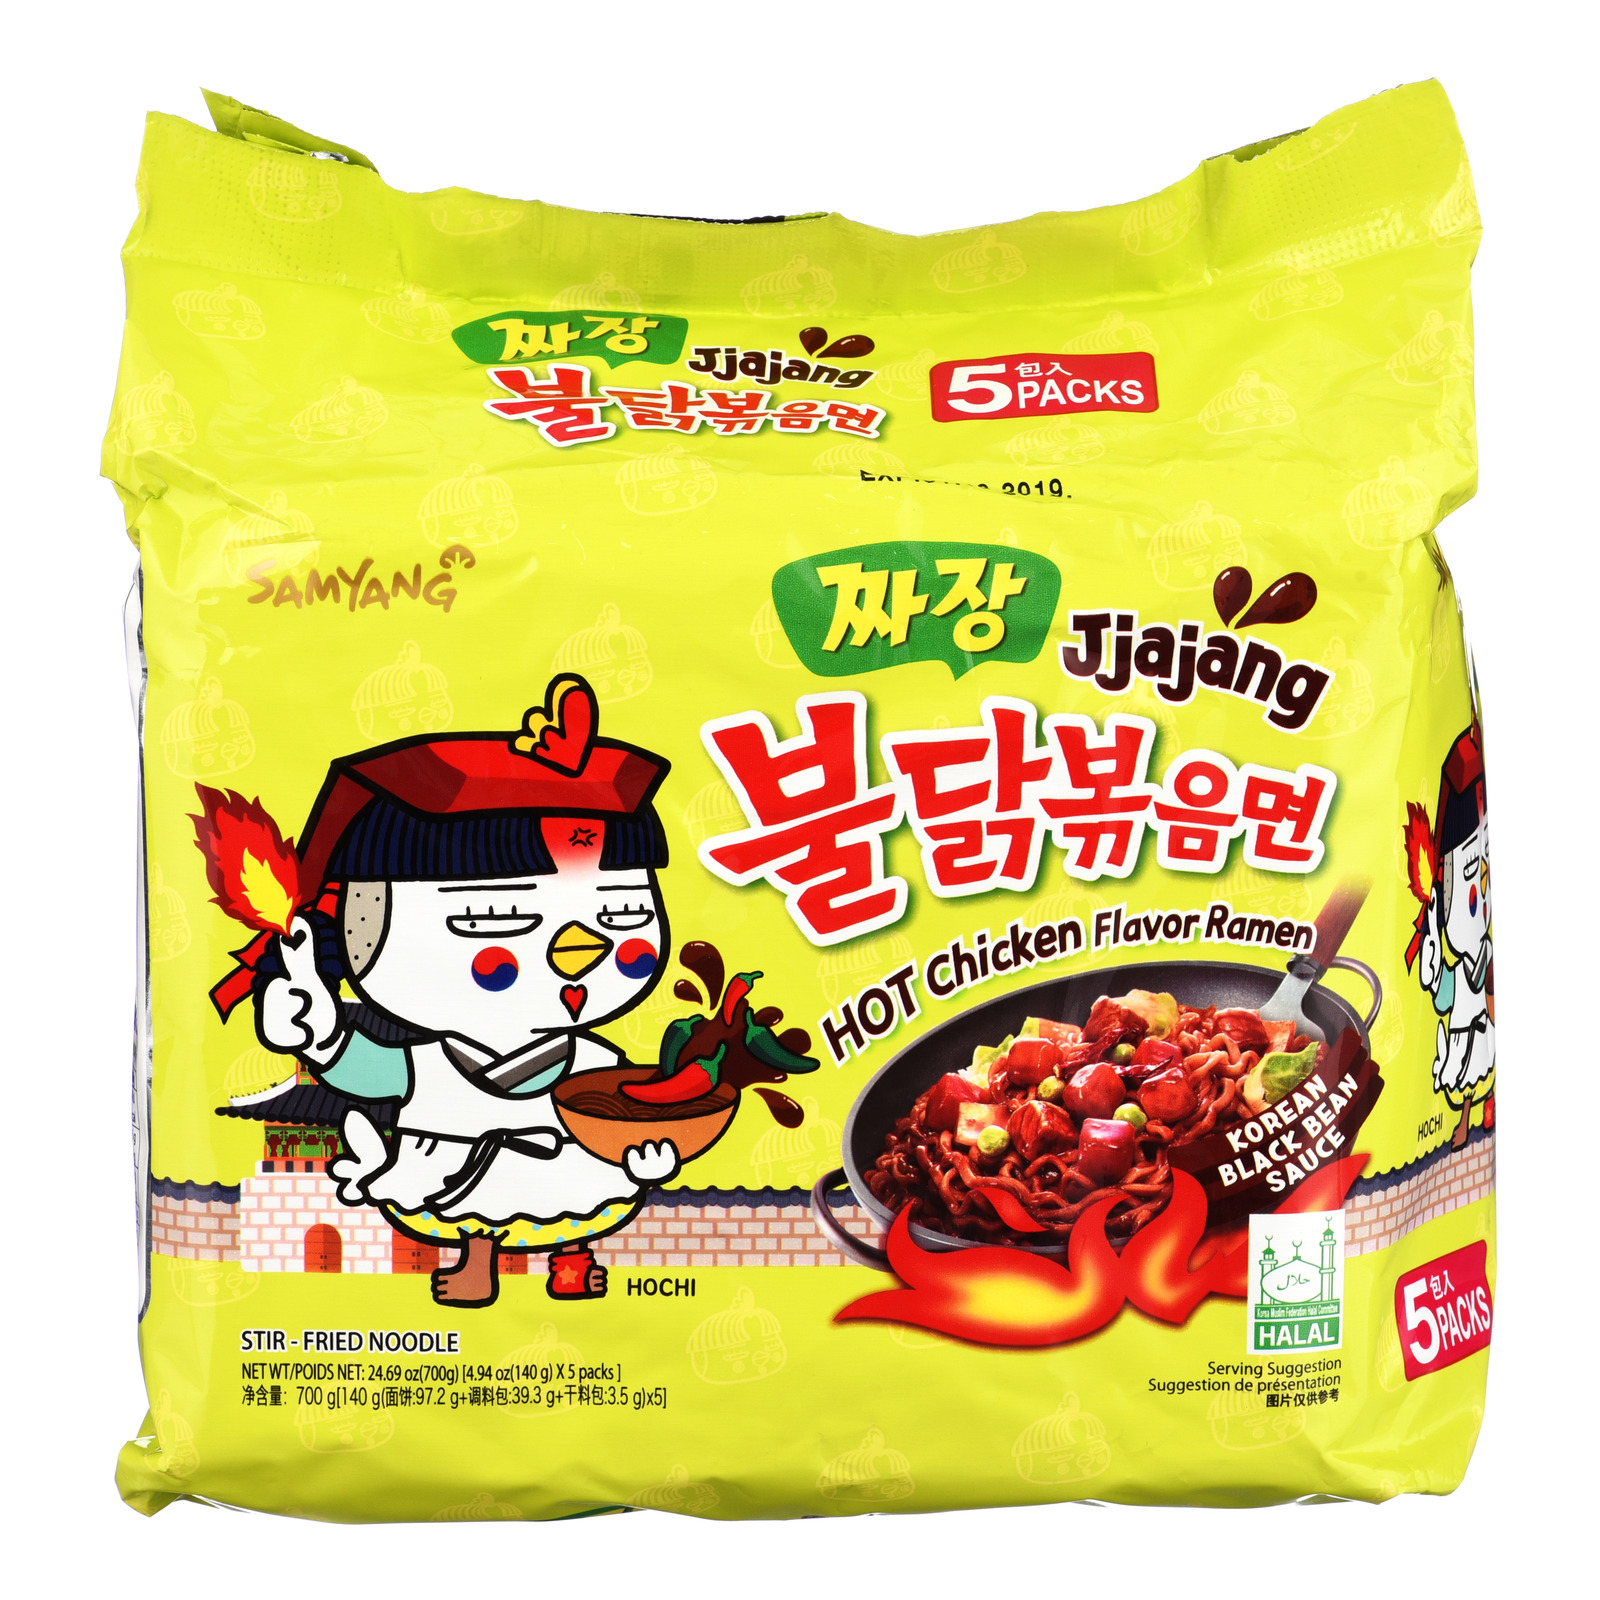 Samyang Hot Chicken Instant Ramen - Jjajang